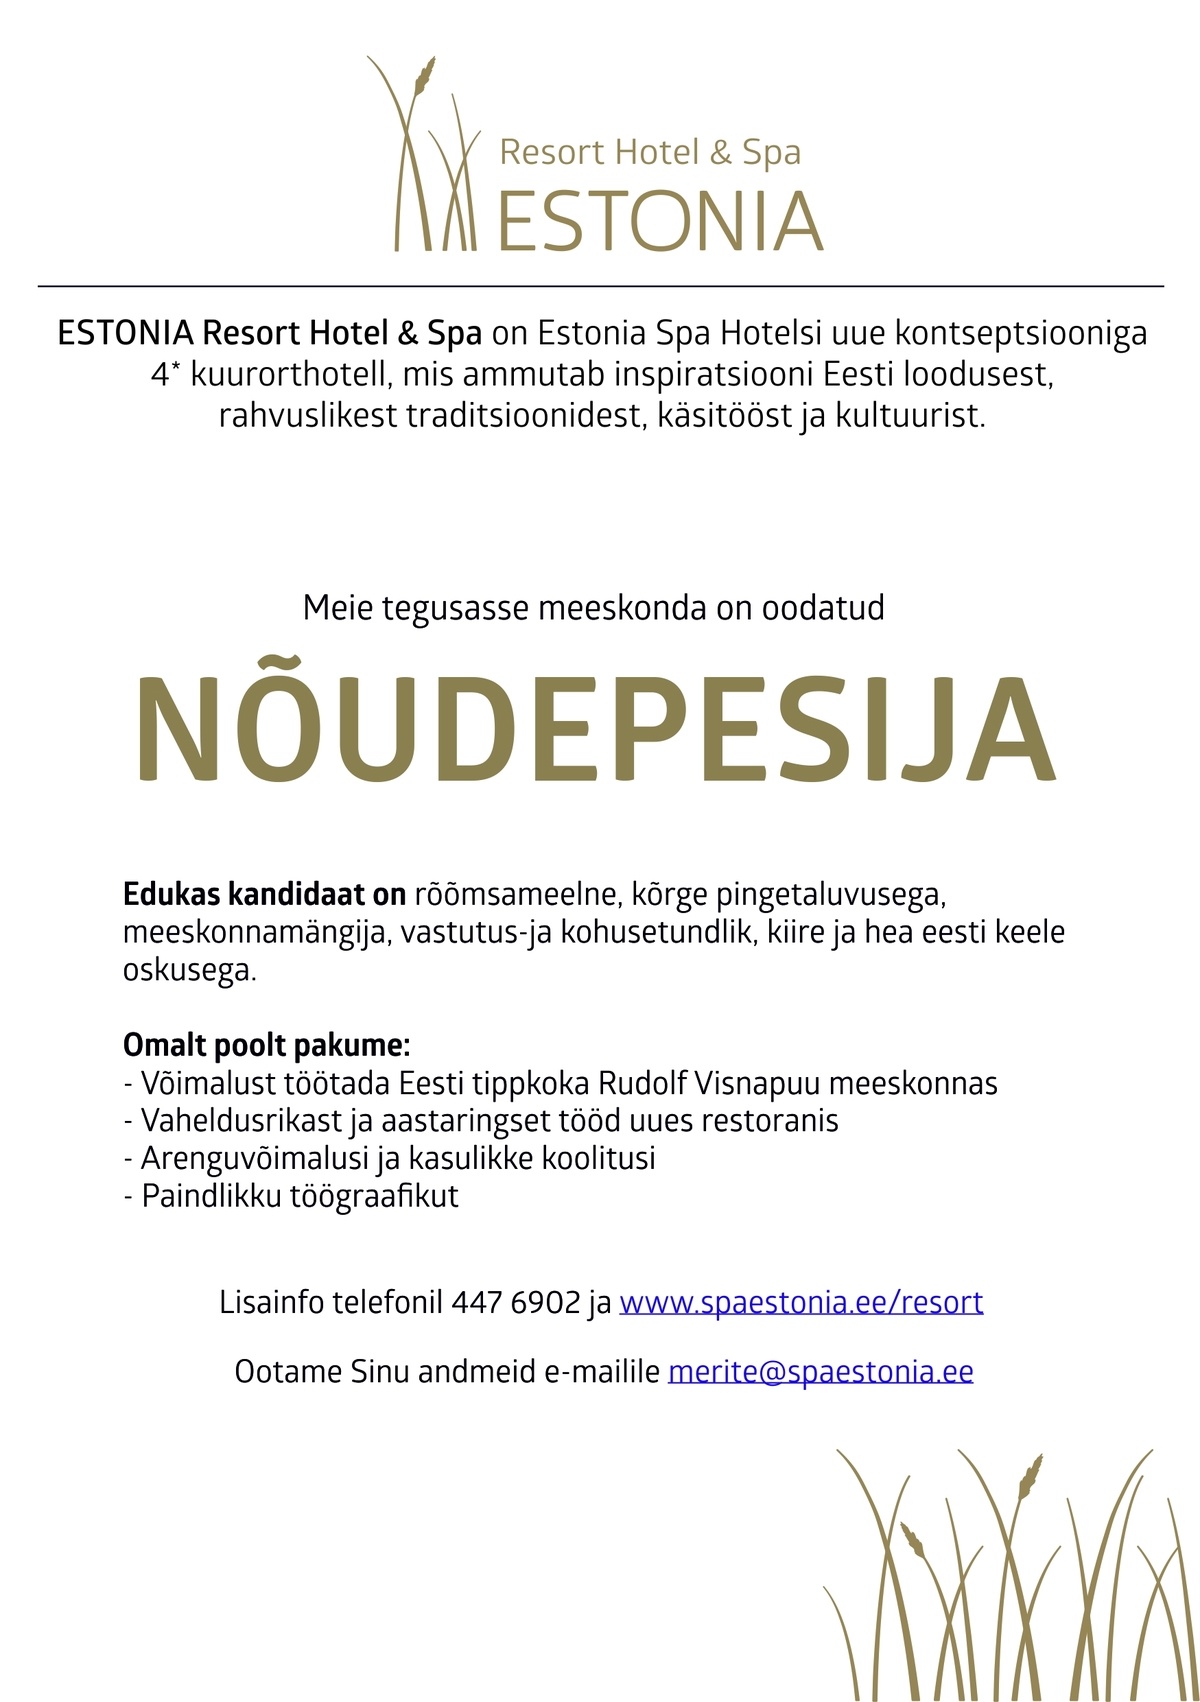 Estonia Spa Hotels AS Nõudepesija